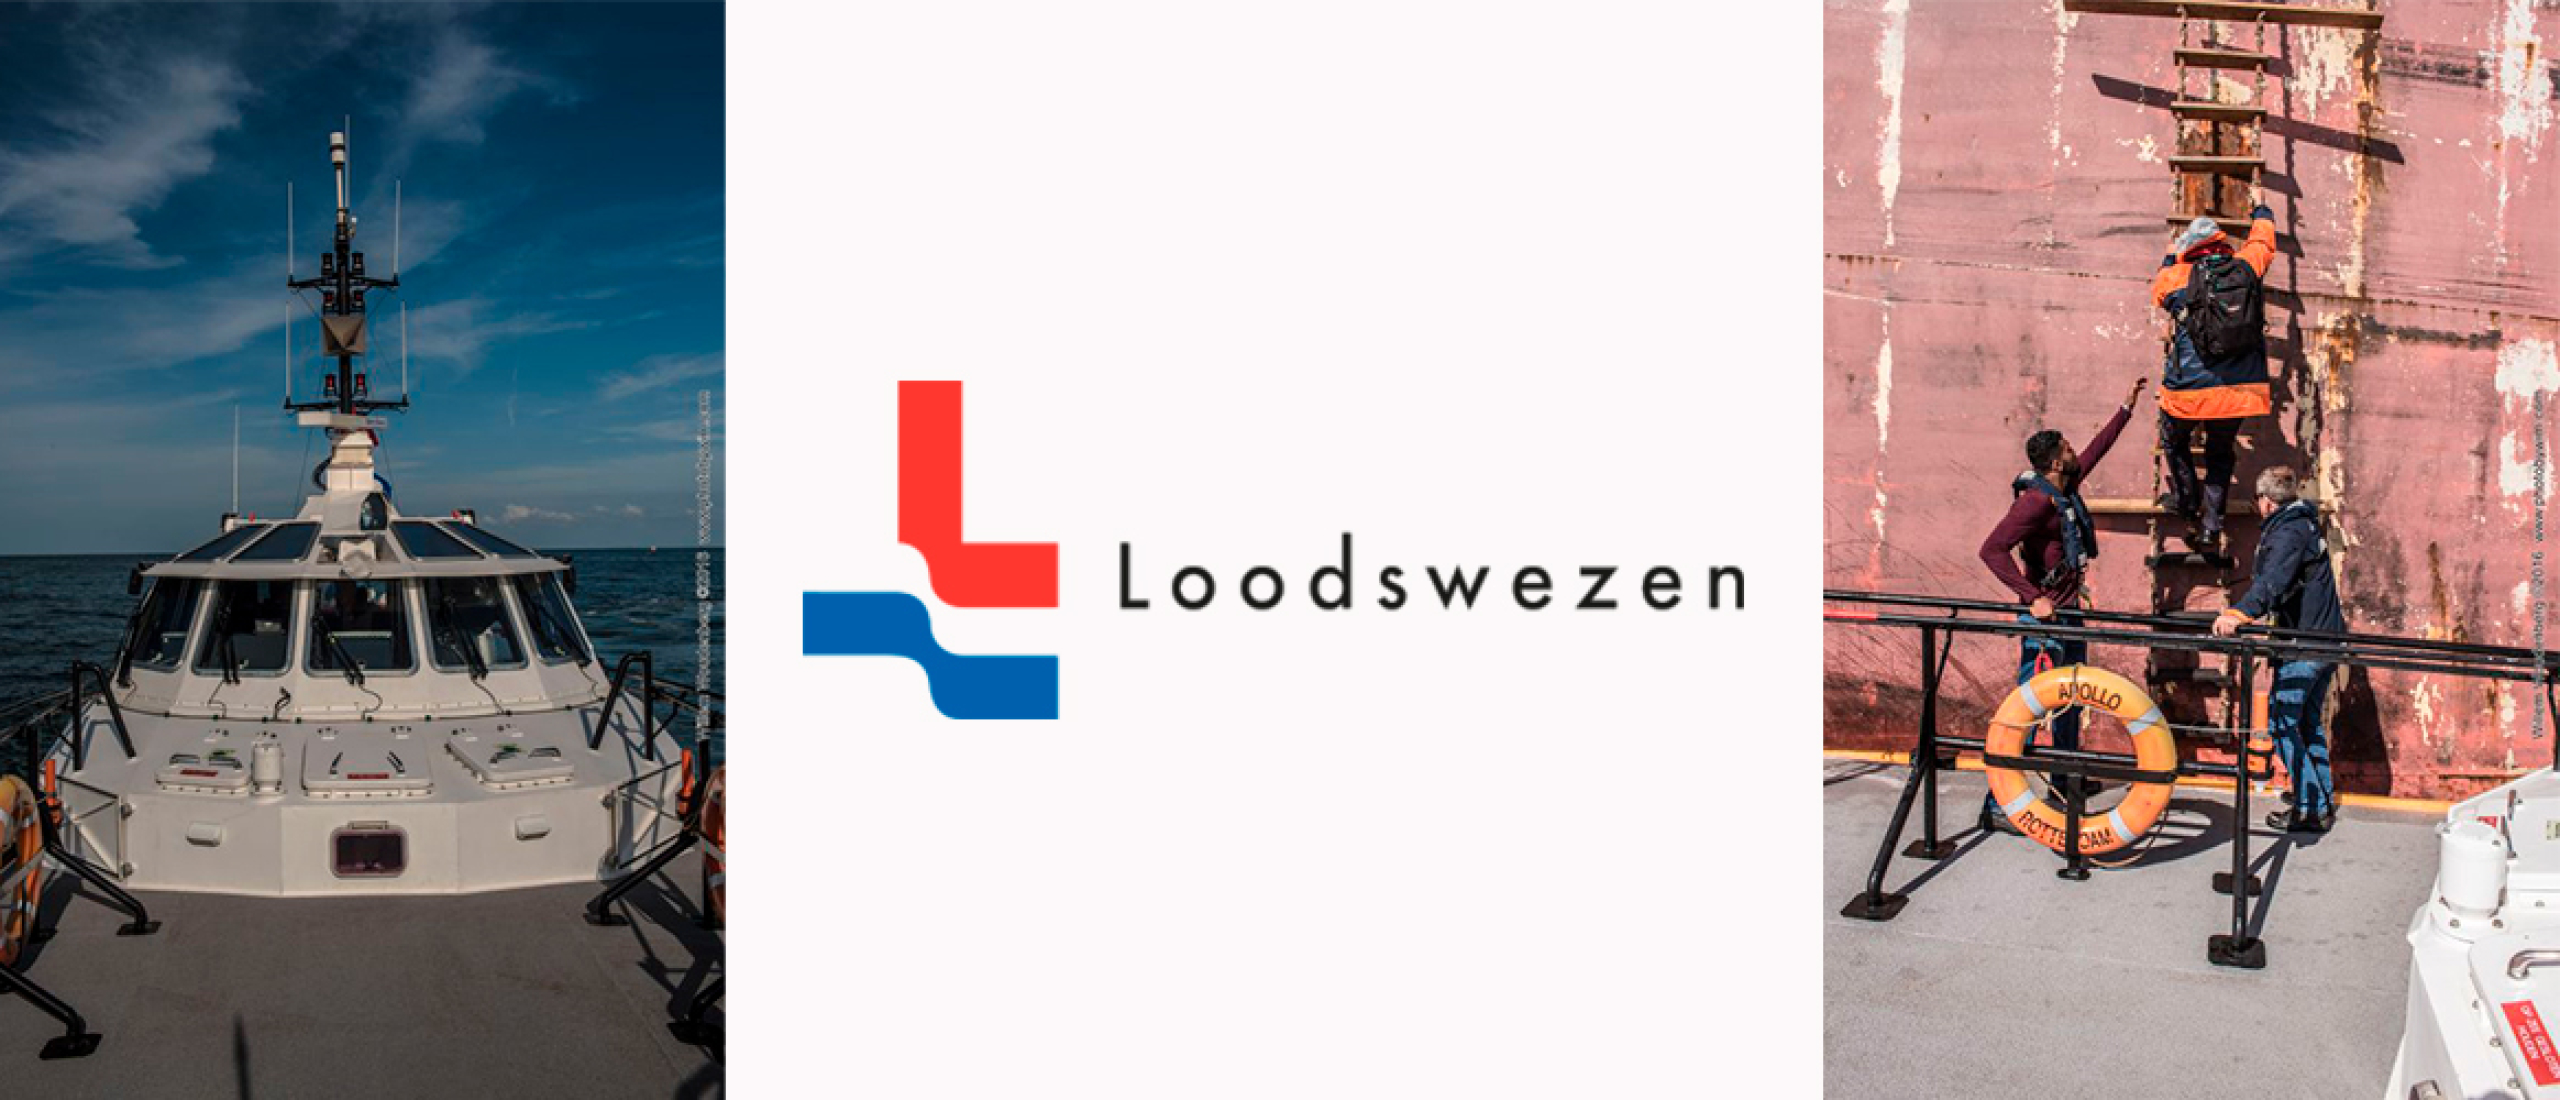 Project Loodswezen